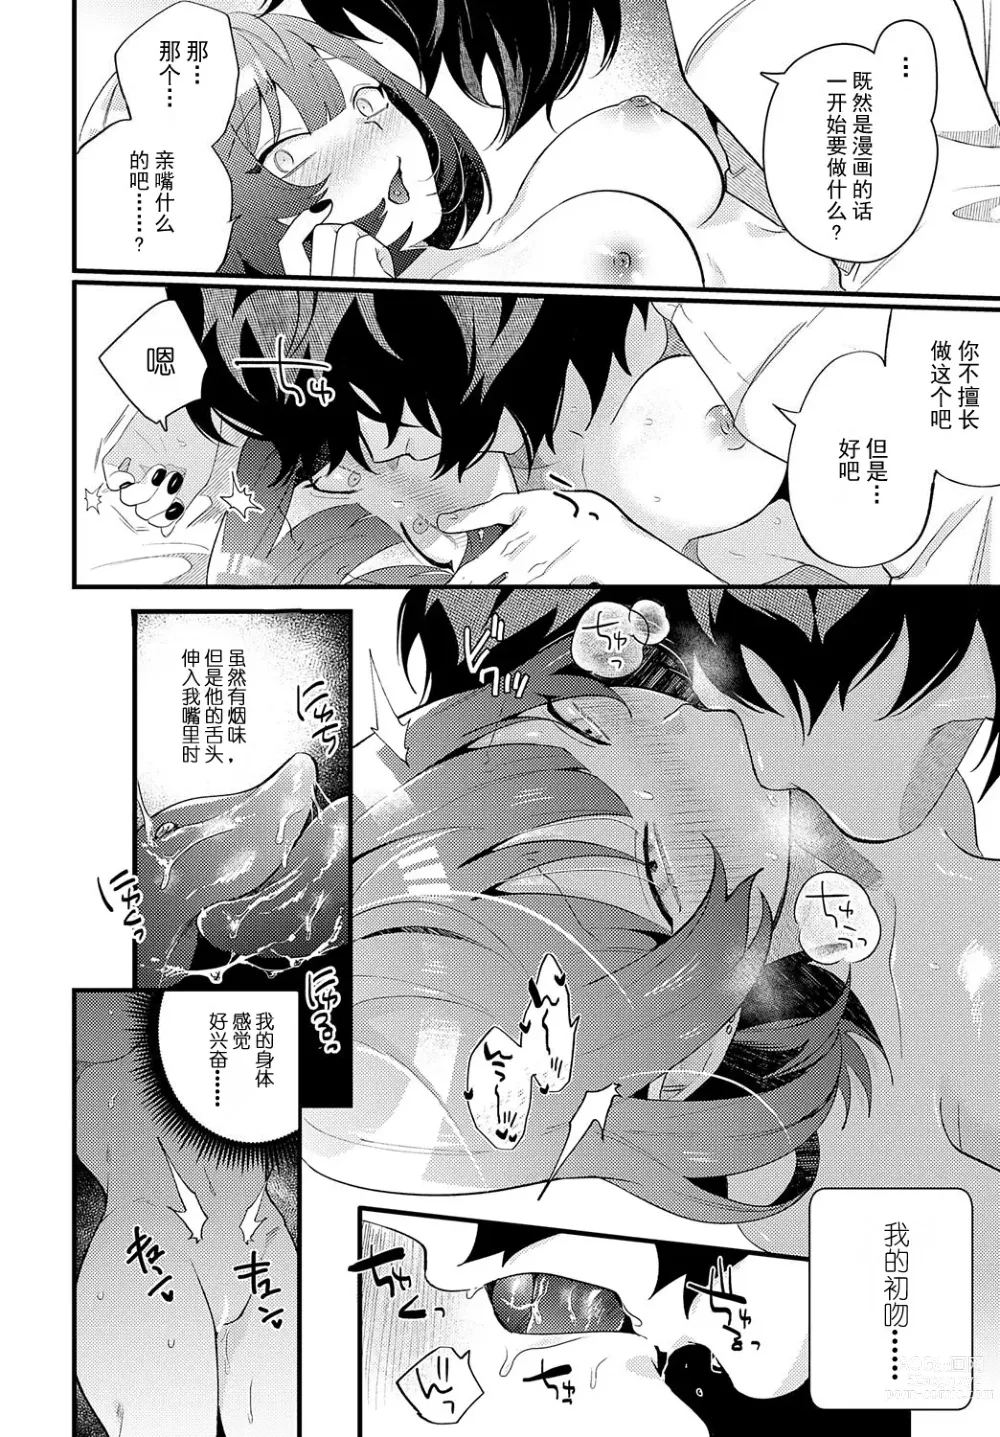 Page 10 of manga 蛇川小姐想让他勃起!